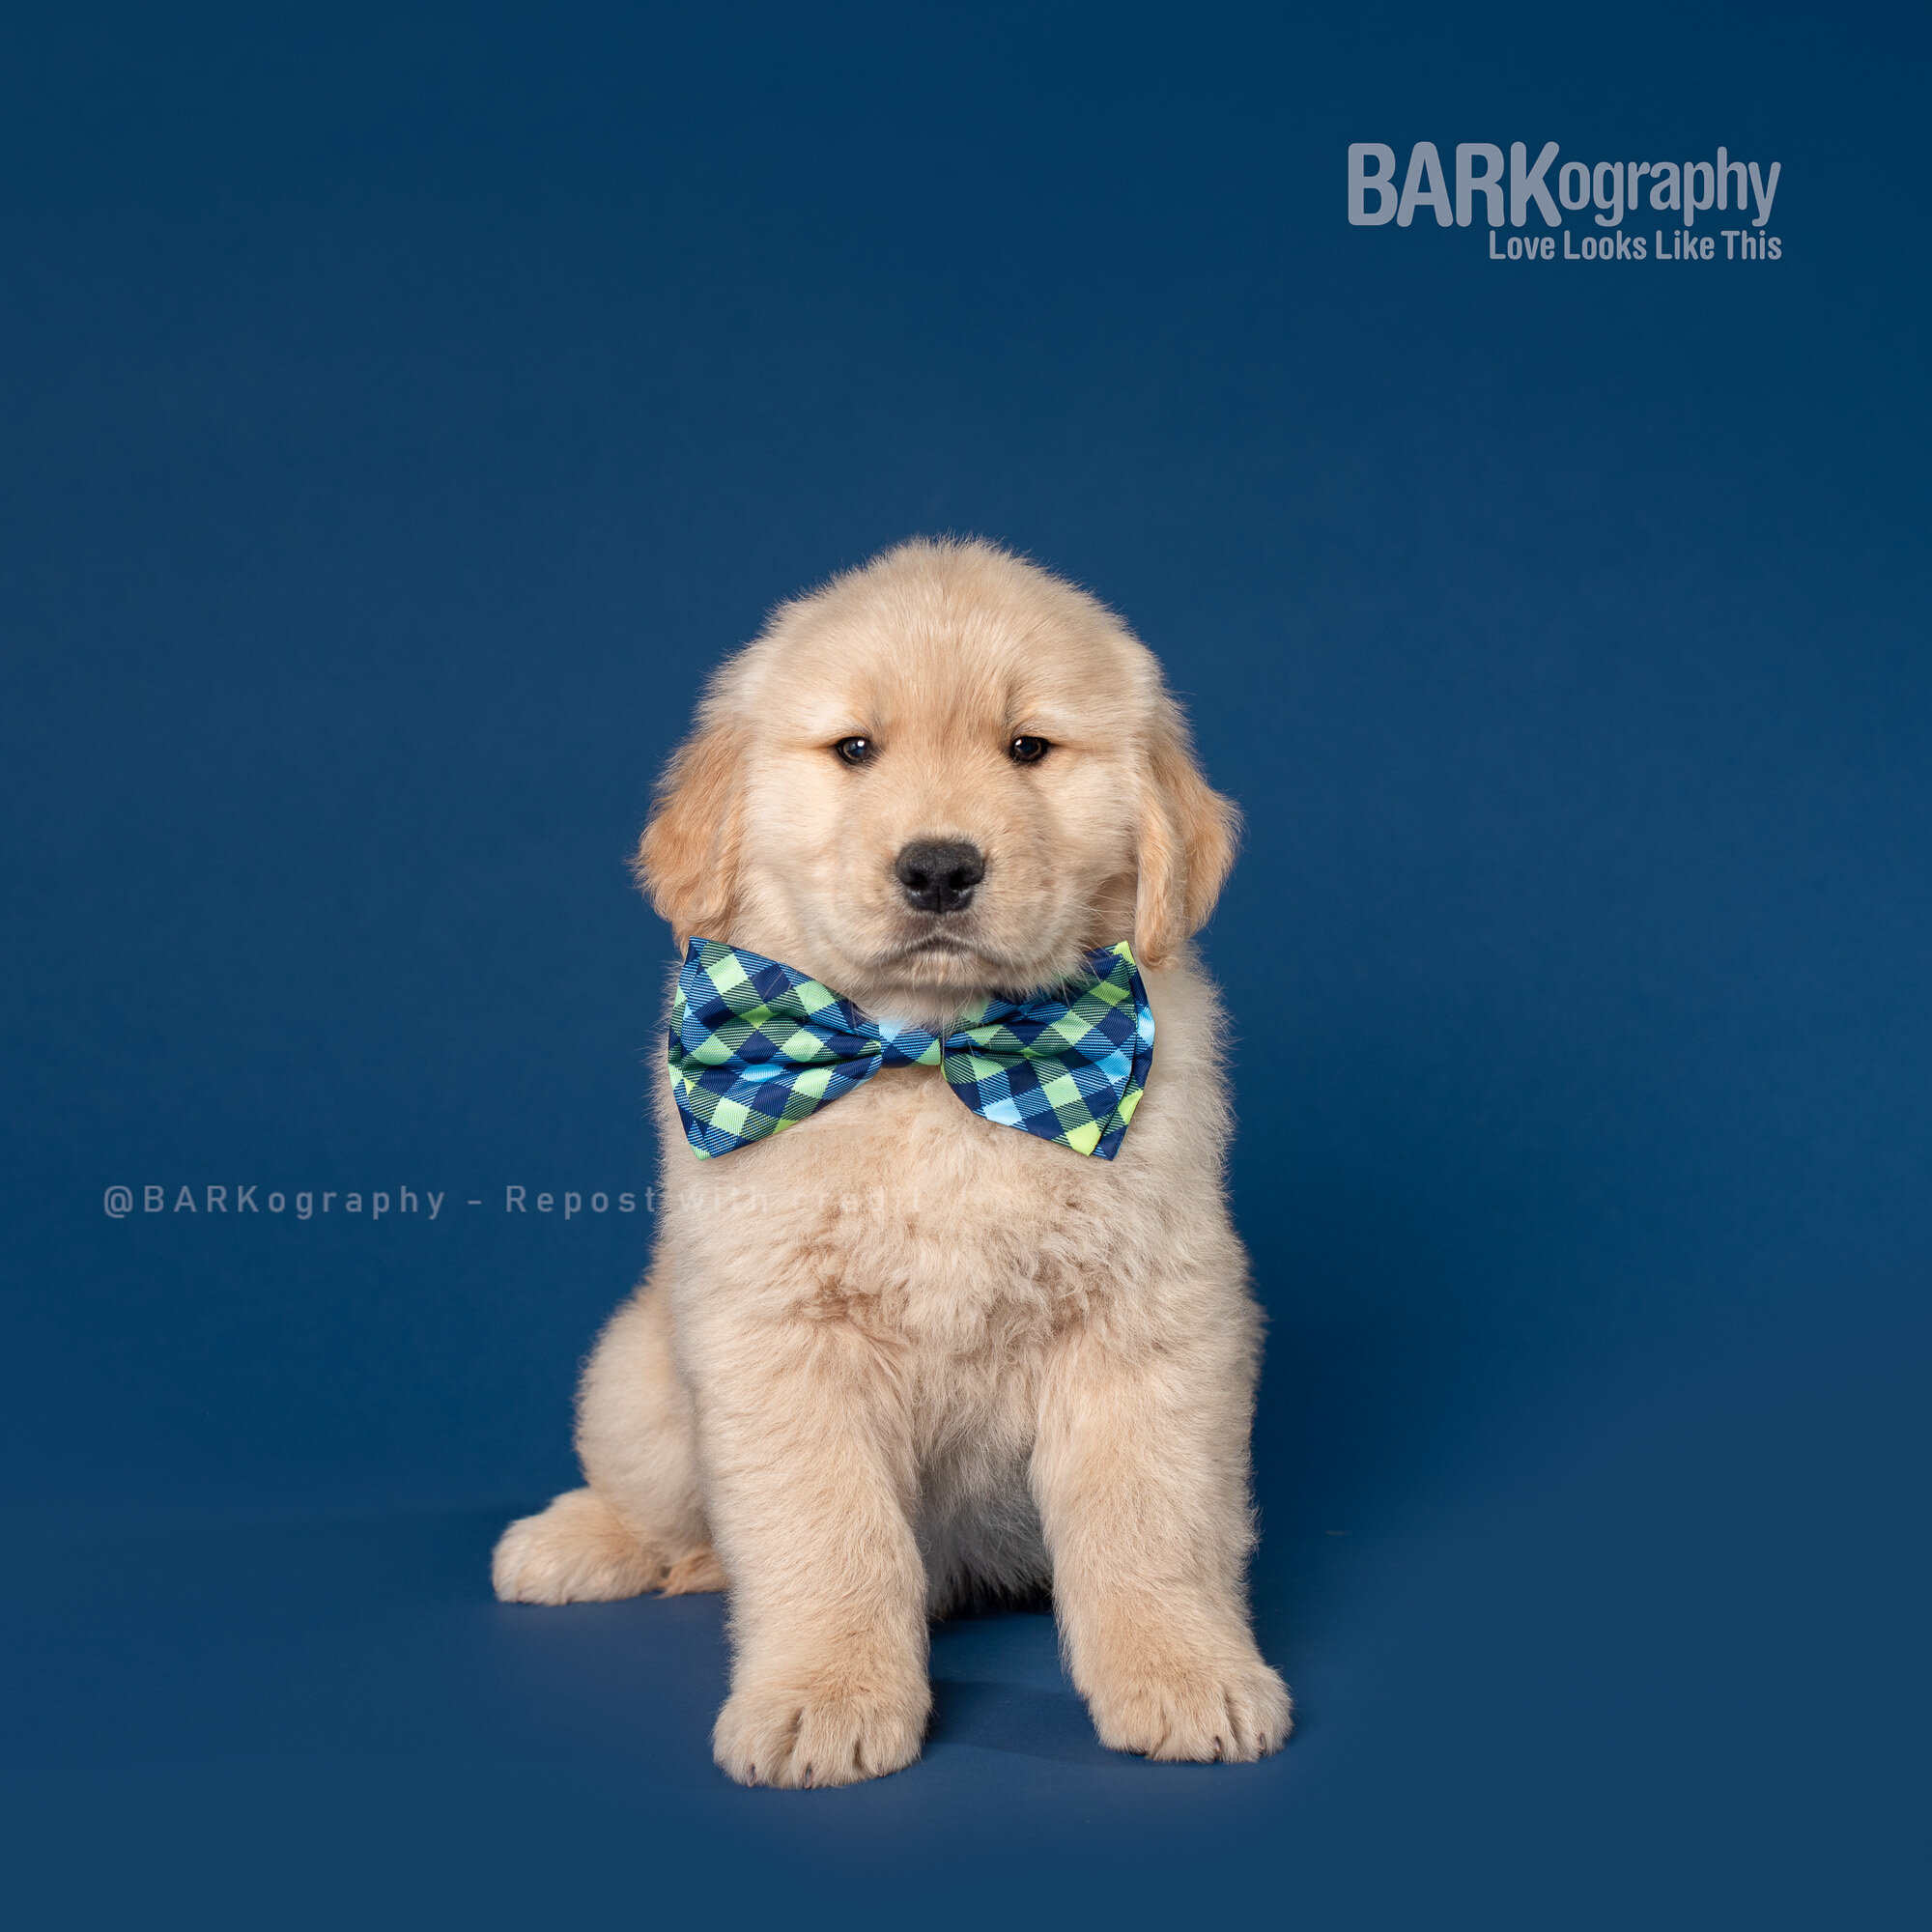 golden retriever puppy wearing bow tie